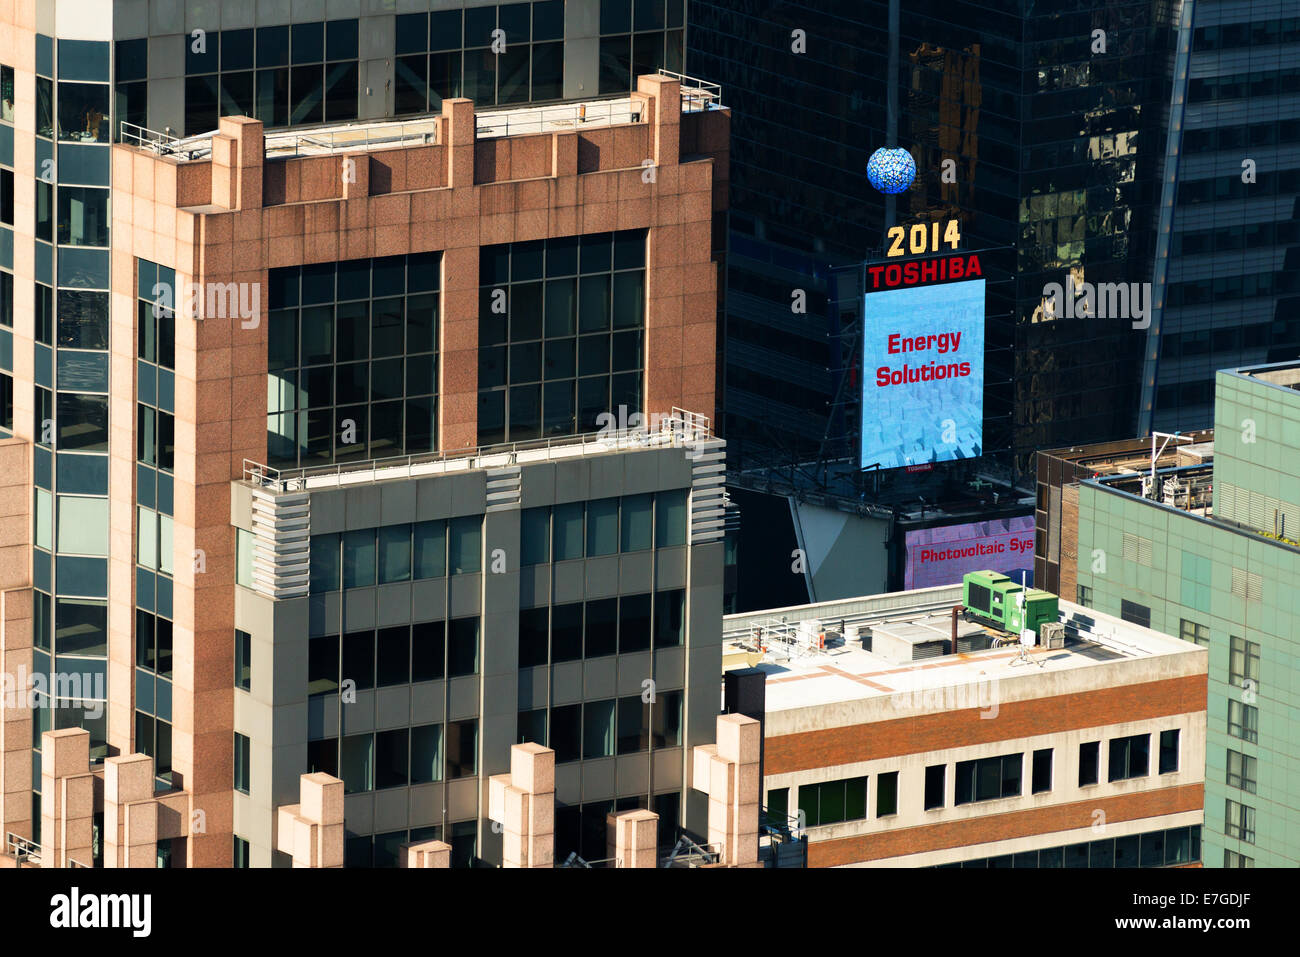 30 agosto 2014 - NEW YORK: annuncio della 'Toshiba' marchio su Times Square si legge "Energy Solutions'. Foto Stock